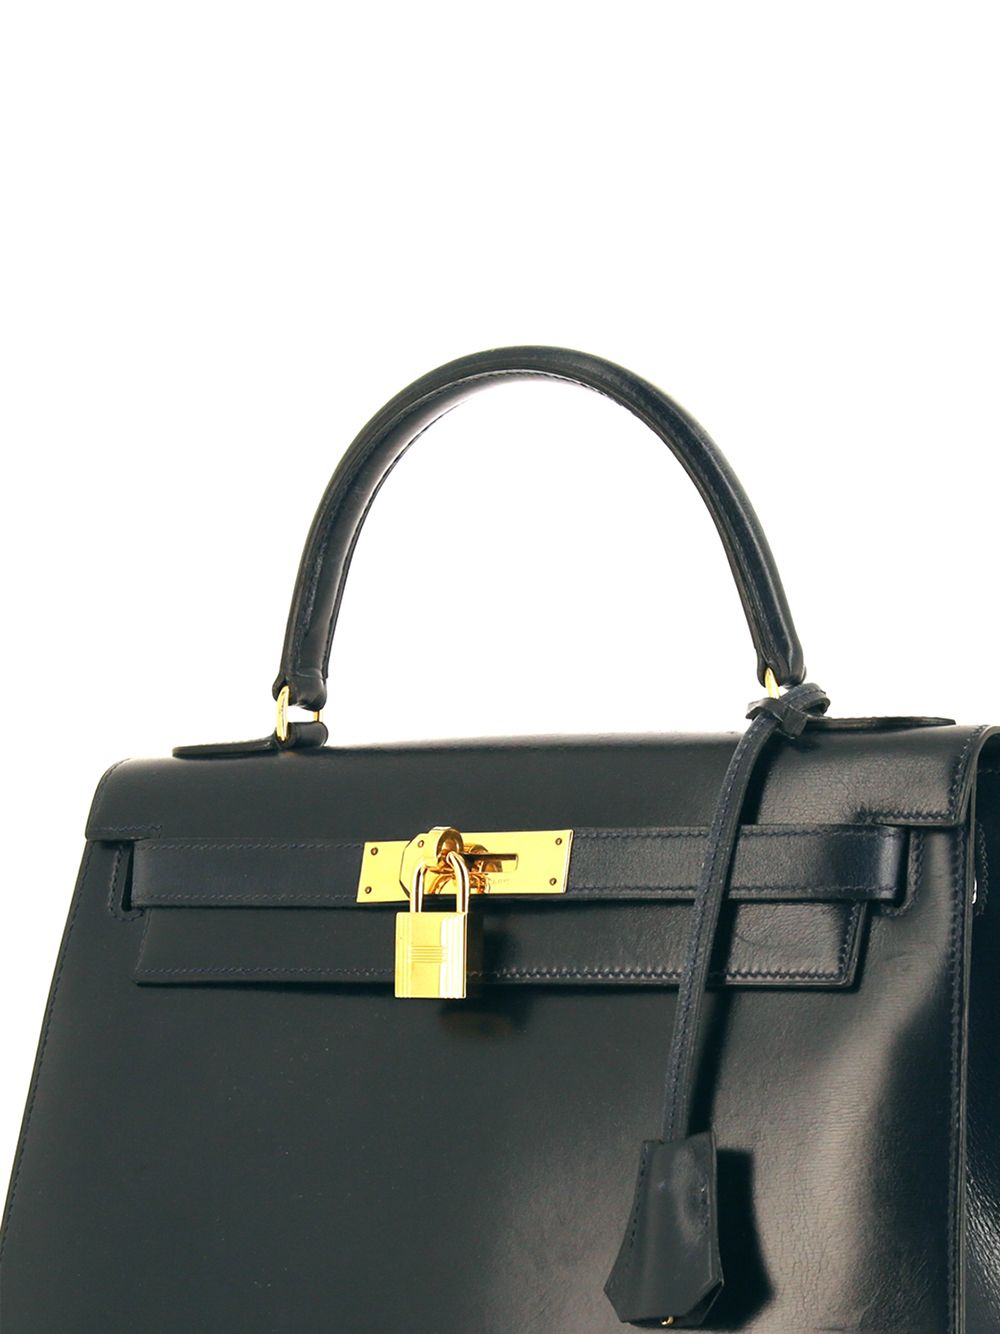 Hermès Kelly 28 Suede Dark Olive Bag